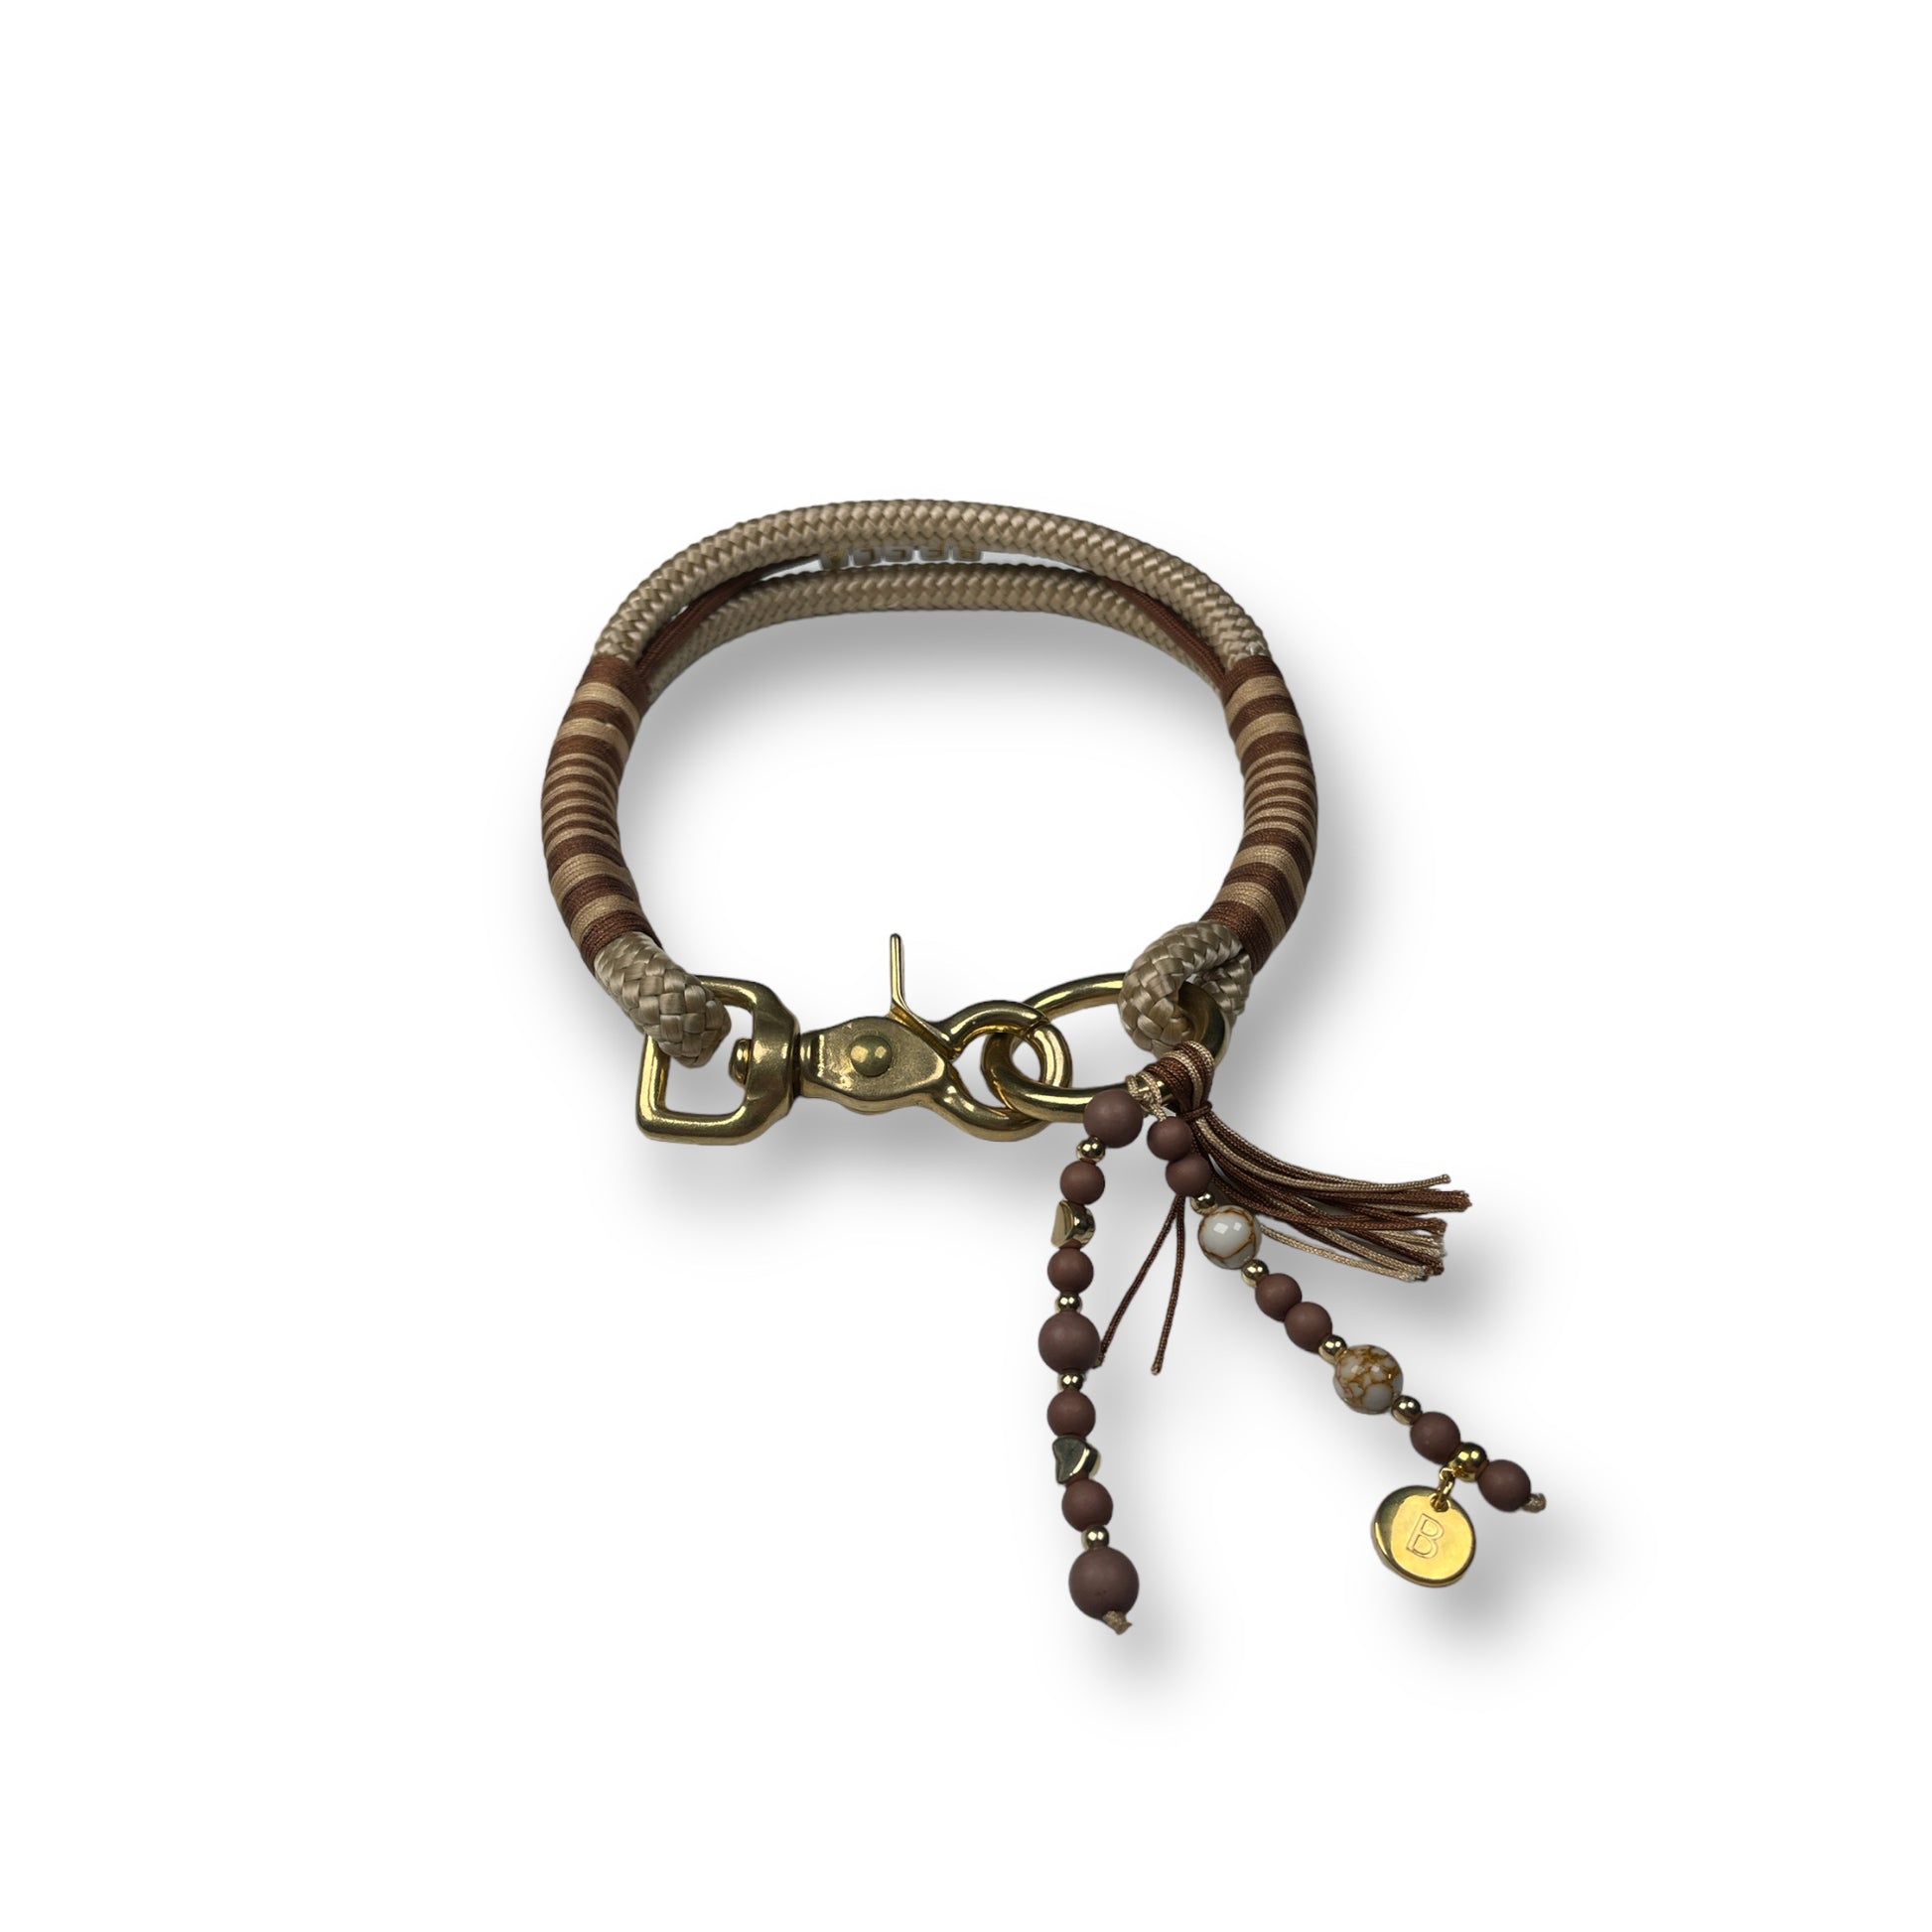 Handgemachtes Hundehalsband aus Tauseil in den Farben Beige, Braun und Gold im Onlineshop Bellousya